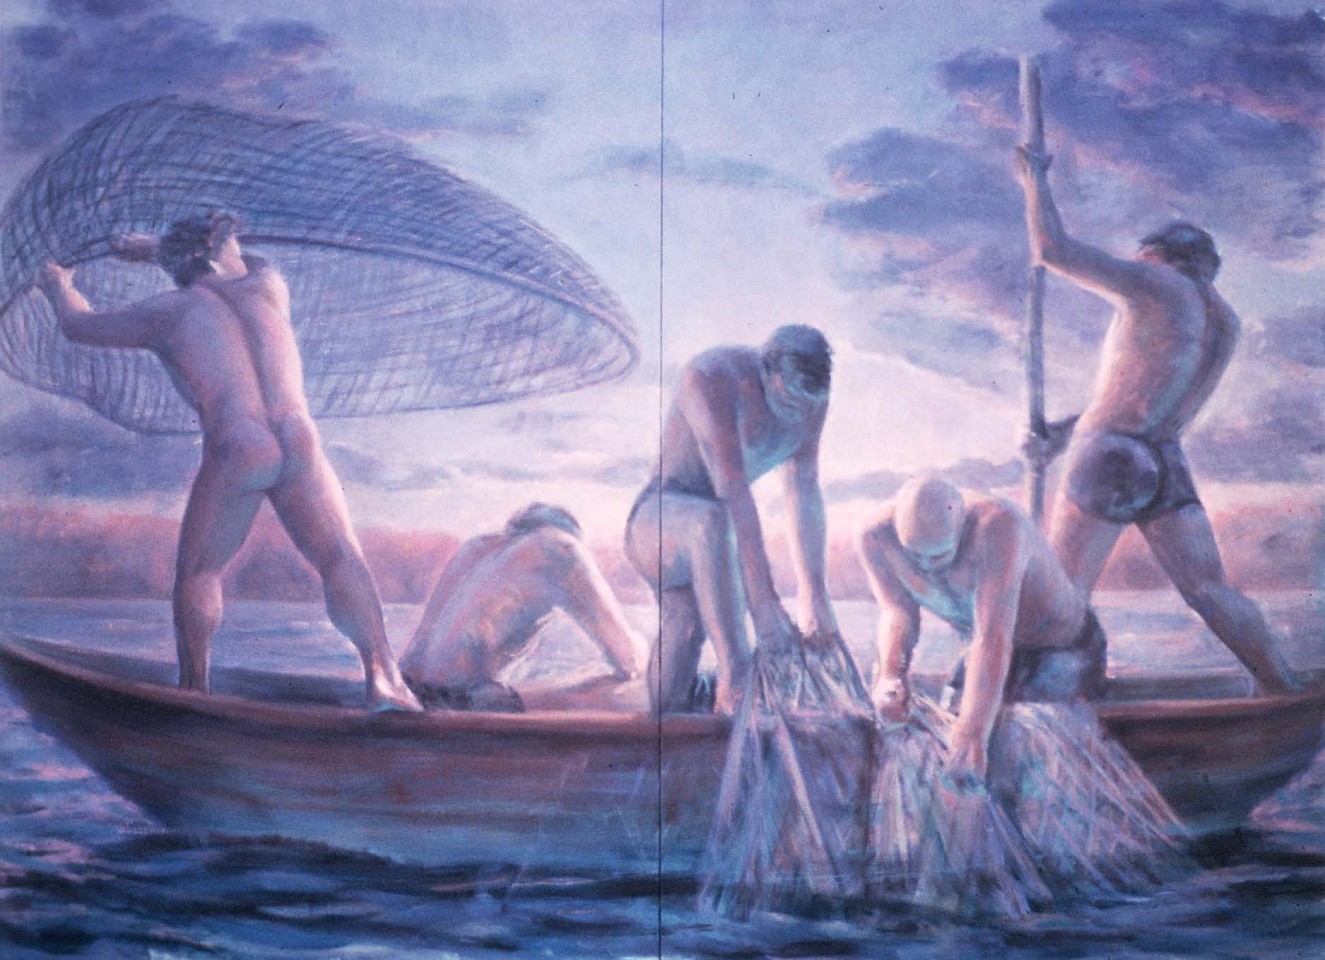 Grant Drumheller
Fishermen, 1984
oil, 108 x 144 in.